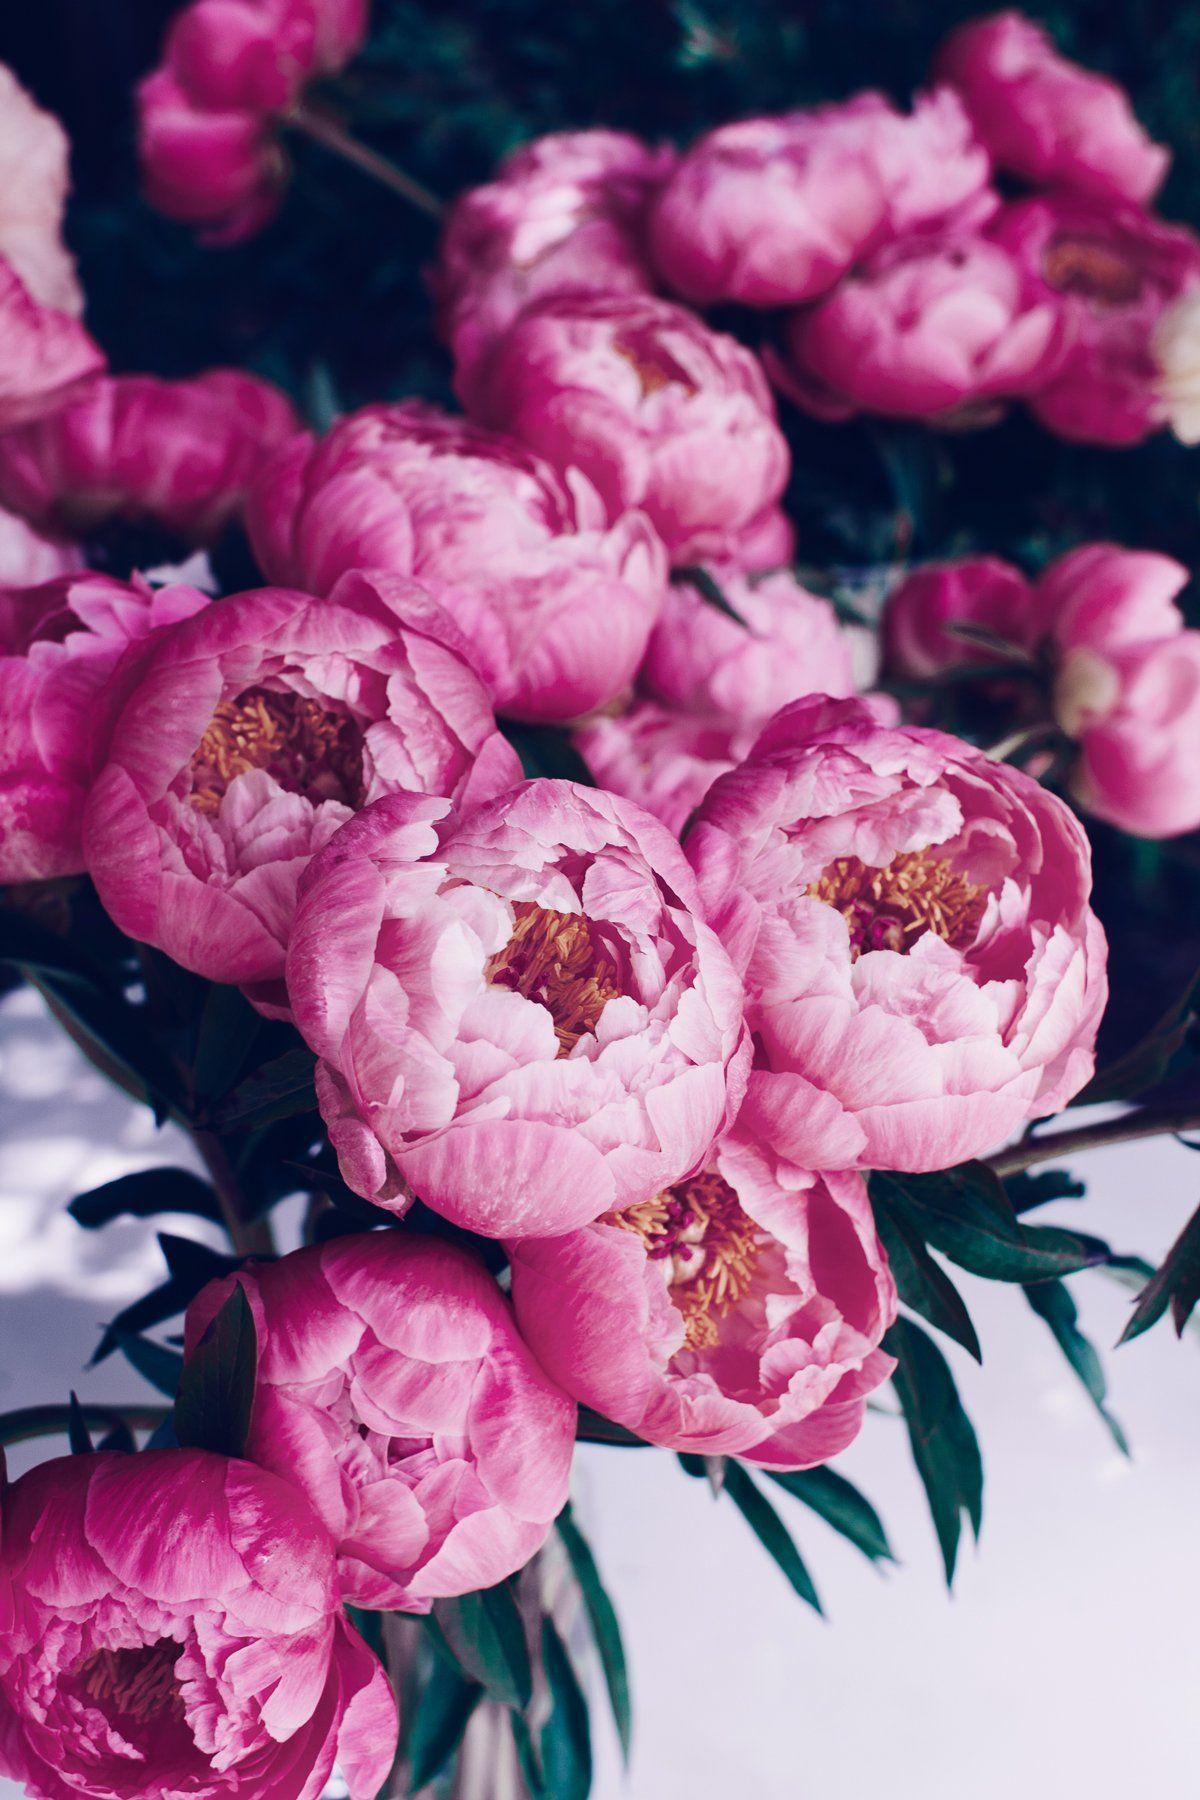 Pink Peonies Flower Wallpapers - Top Free Pink Peonies Flower